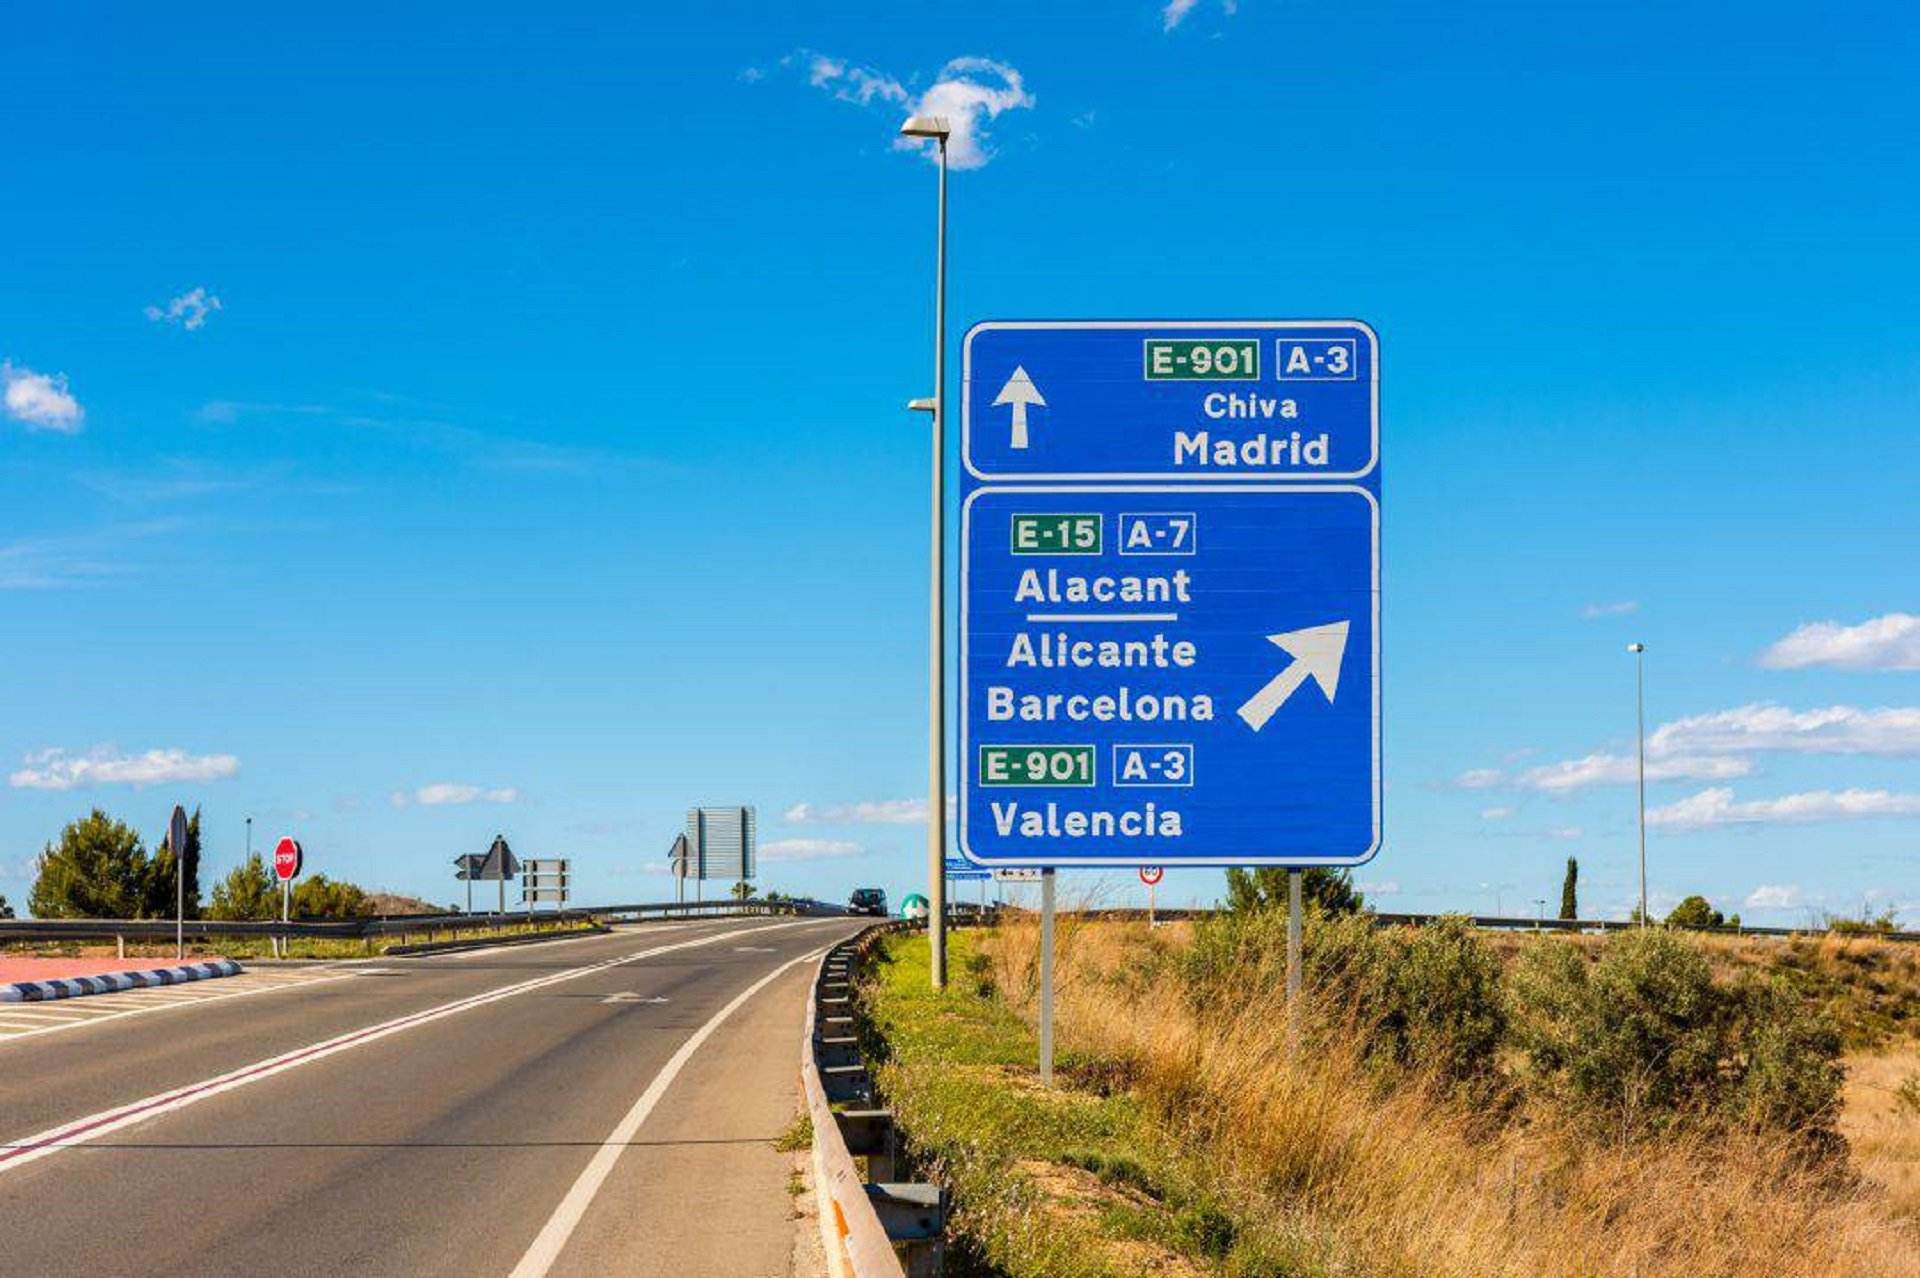 Ofensiva españolista para imponer el castellano en las señales de tráfico de Catalunya